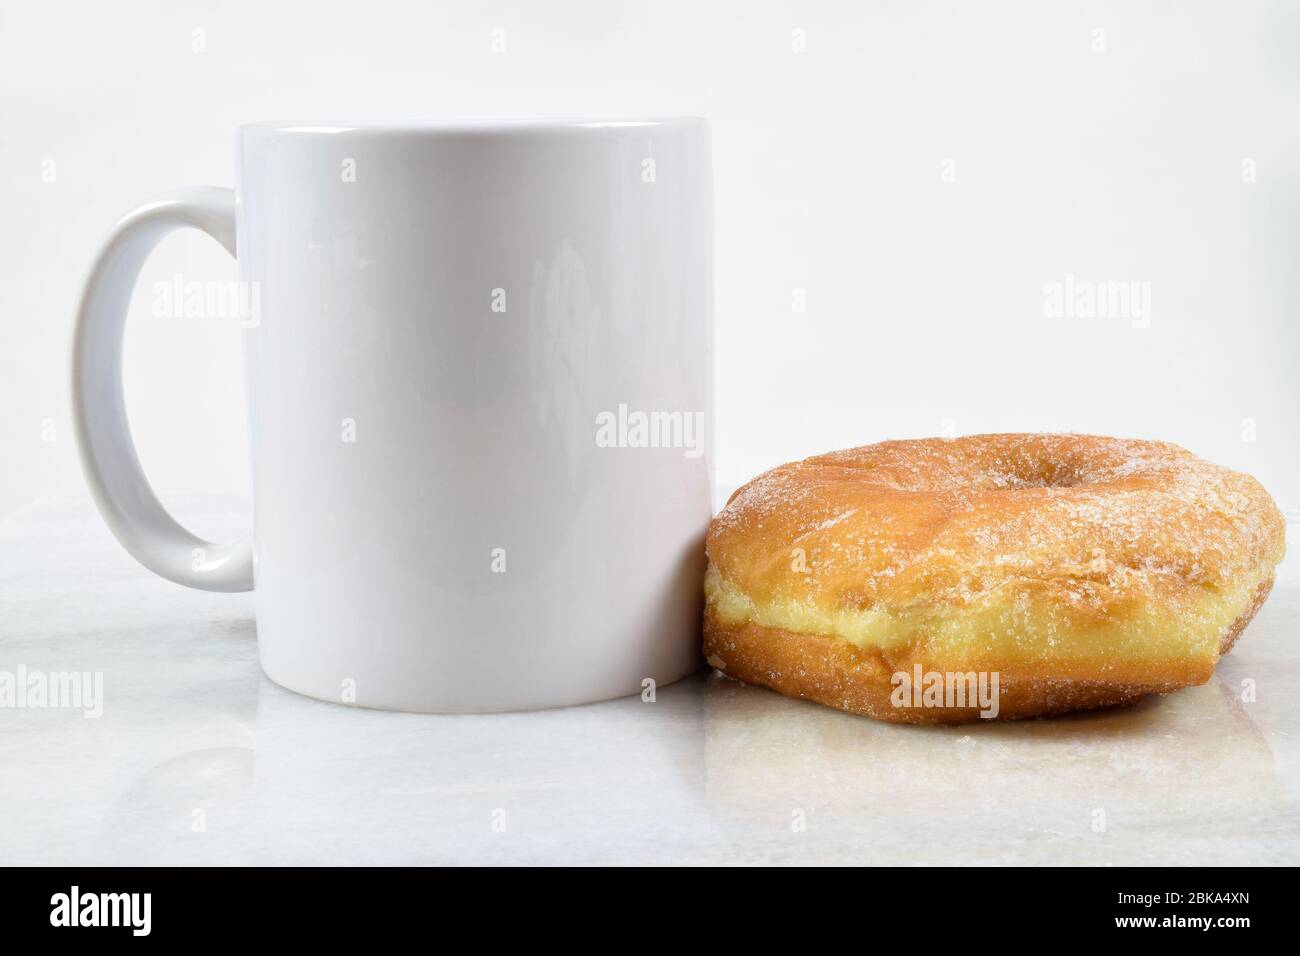 Una deliziosa ciambella rivestita di zucchero si trova tentevolmente accanto a una tazza da caffè da 11 ml. Foto Stock